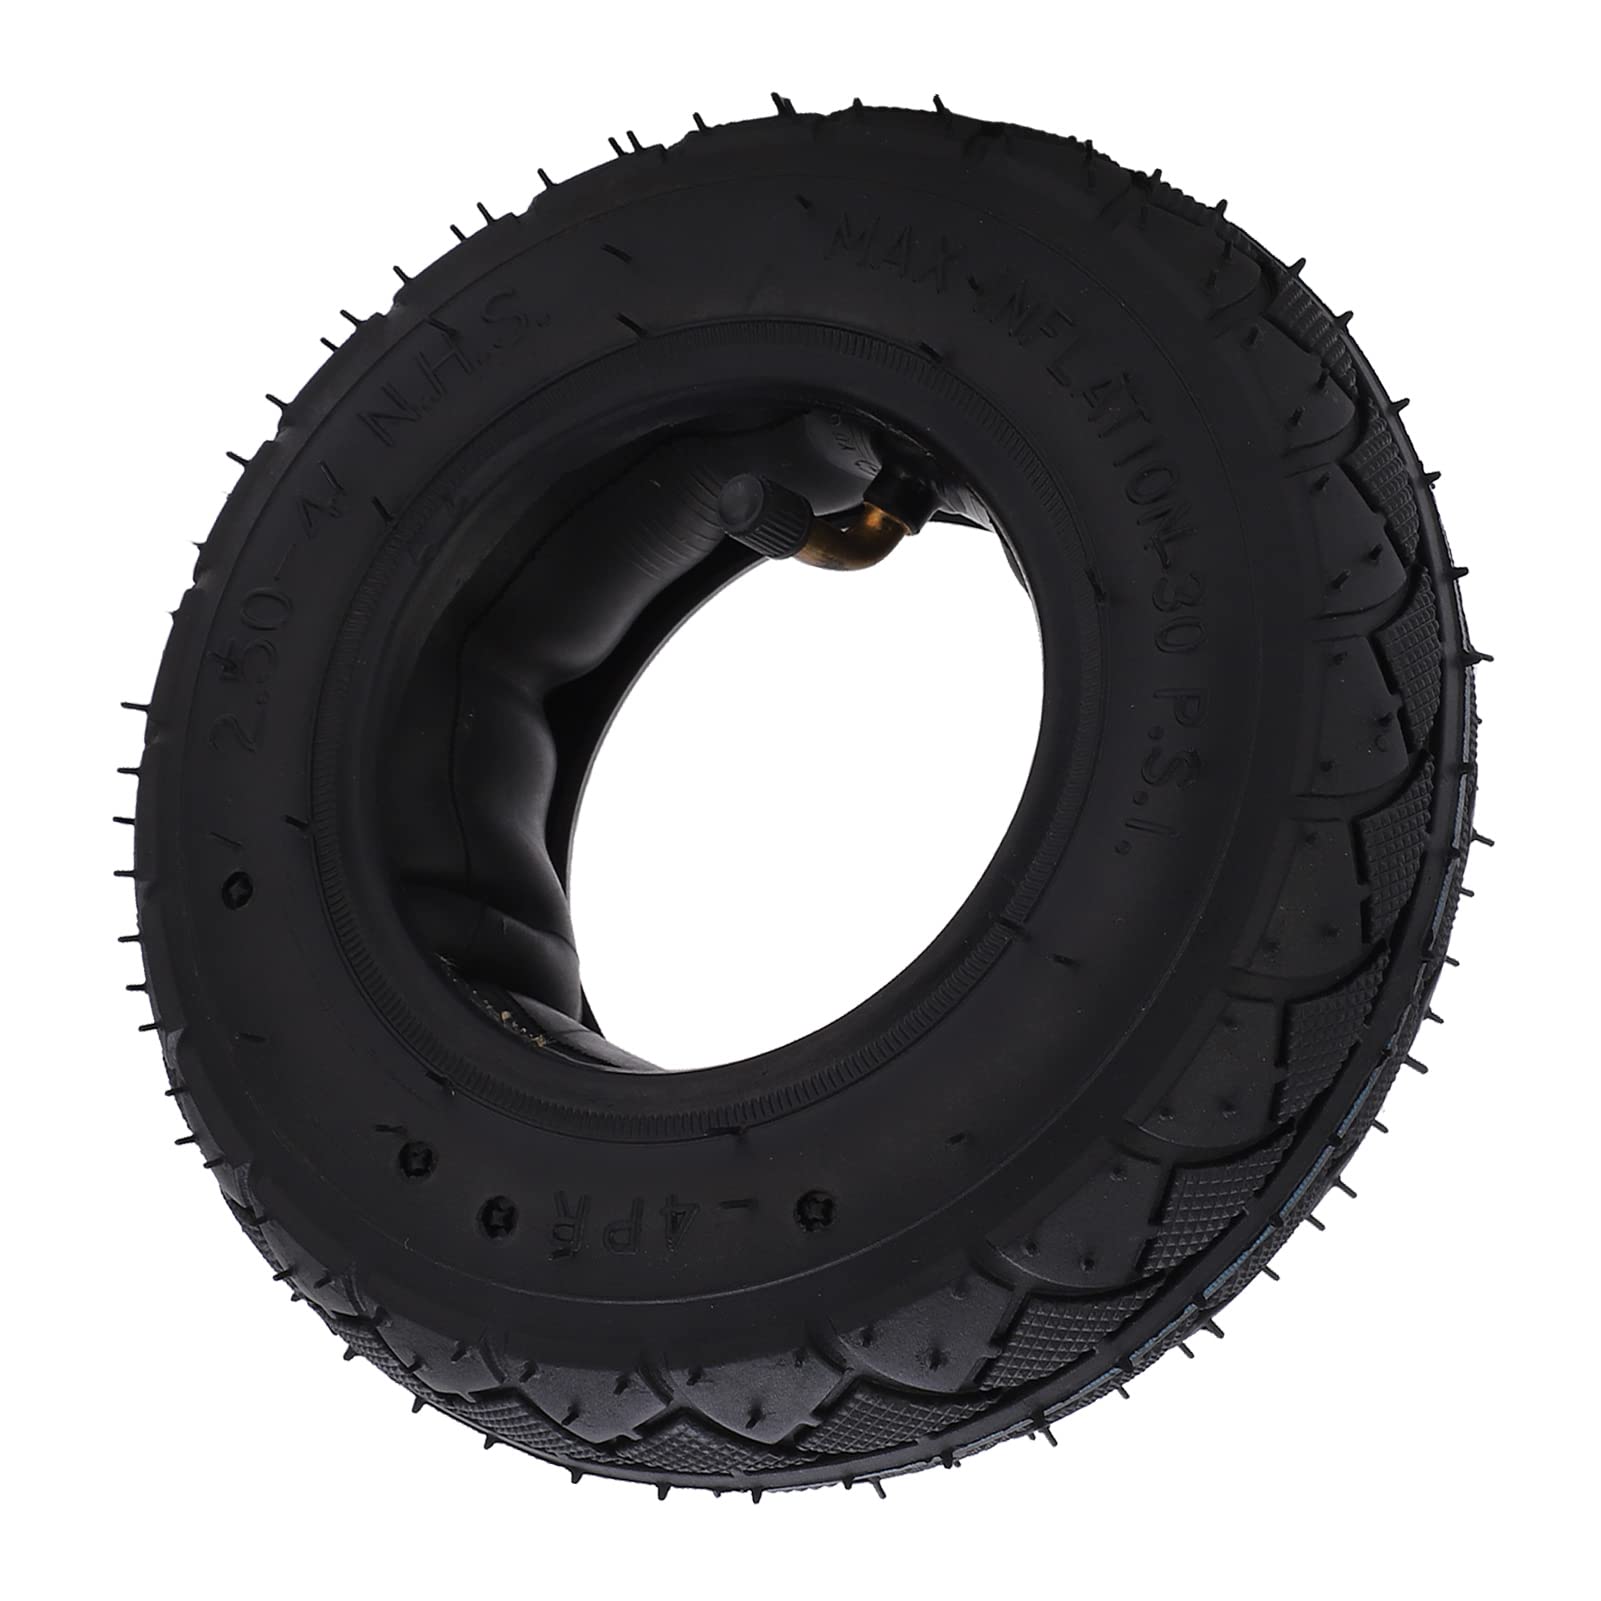 Gatuxe 2.50-4 Reifen und Schlauch, Anti-Aging 2.50-4 Reifen und Schlauchsatz Geräuscharmer, langlebiger, sicherer Gummi für Roller